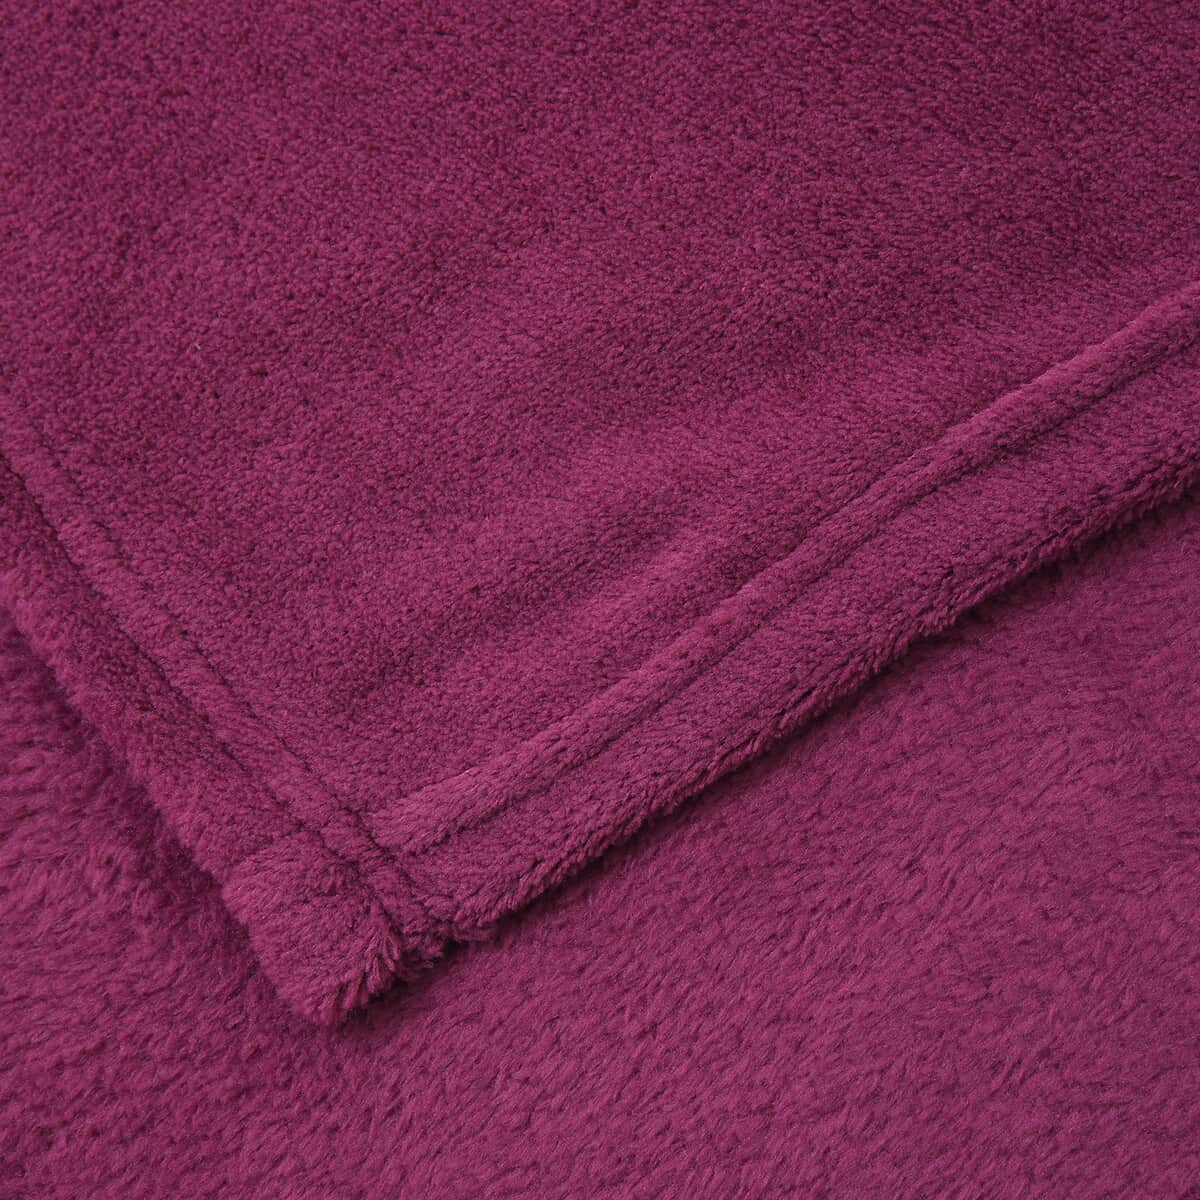 Homesmart Magenta Solid Super Soft and Warm Coral Fleece Blanket image number 2